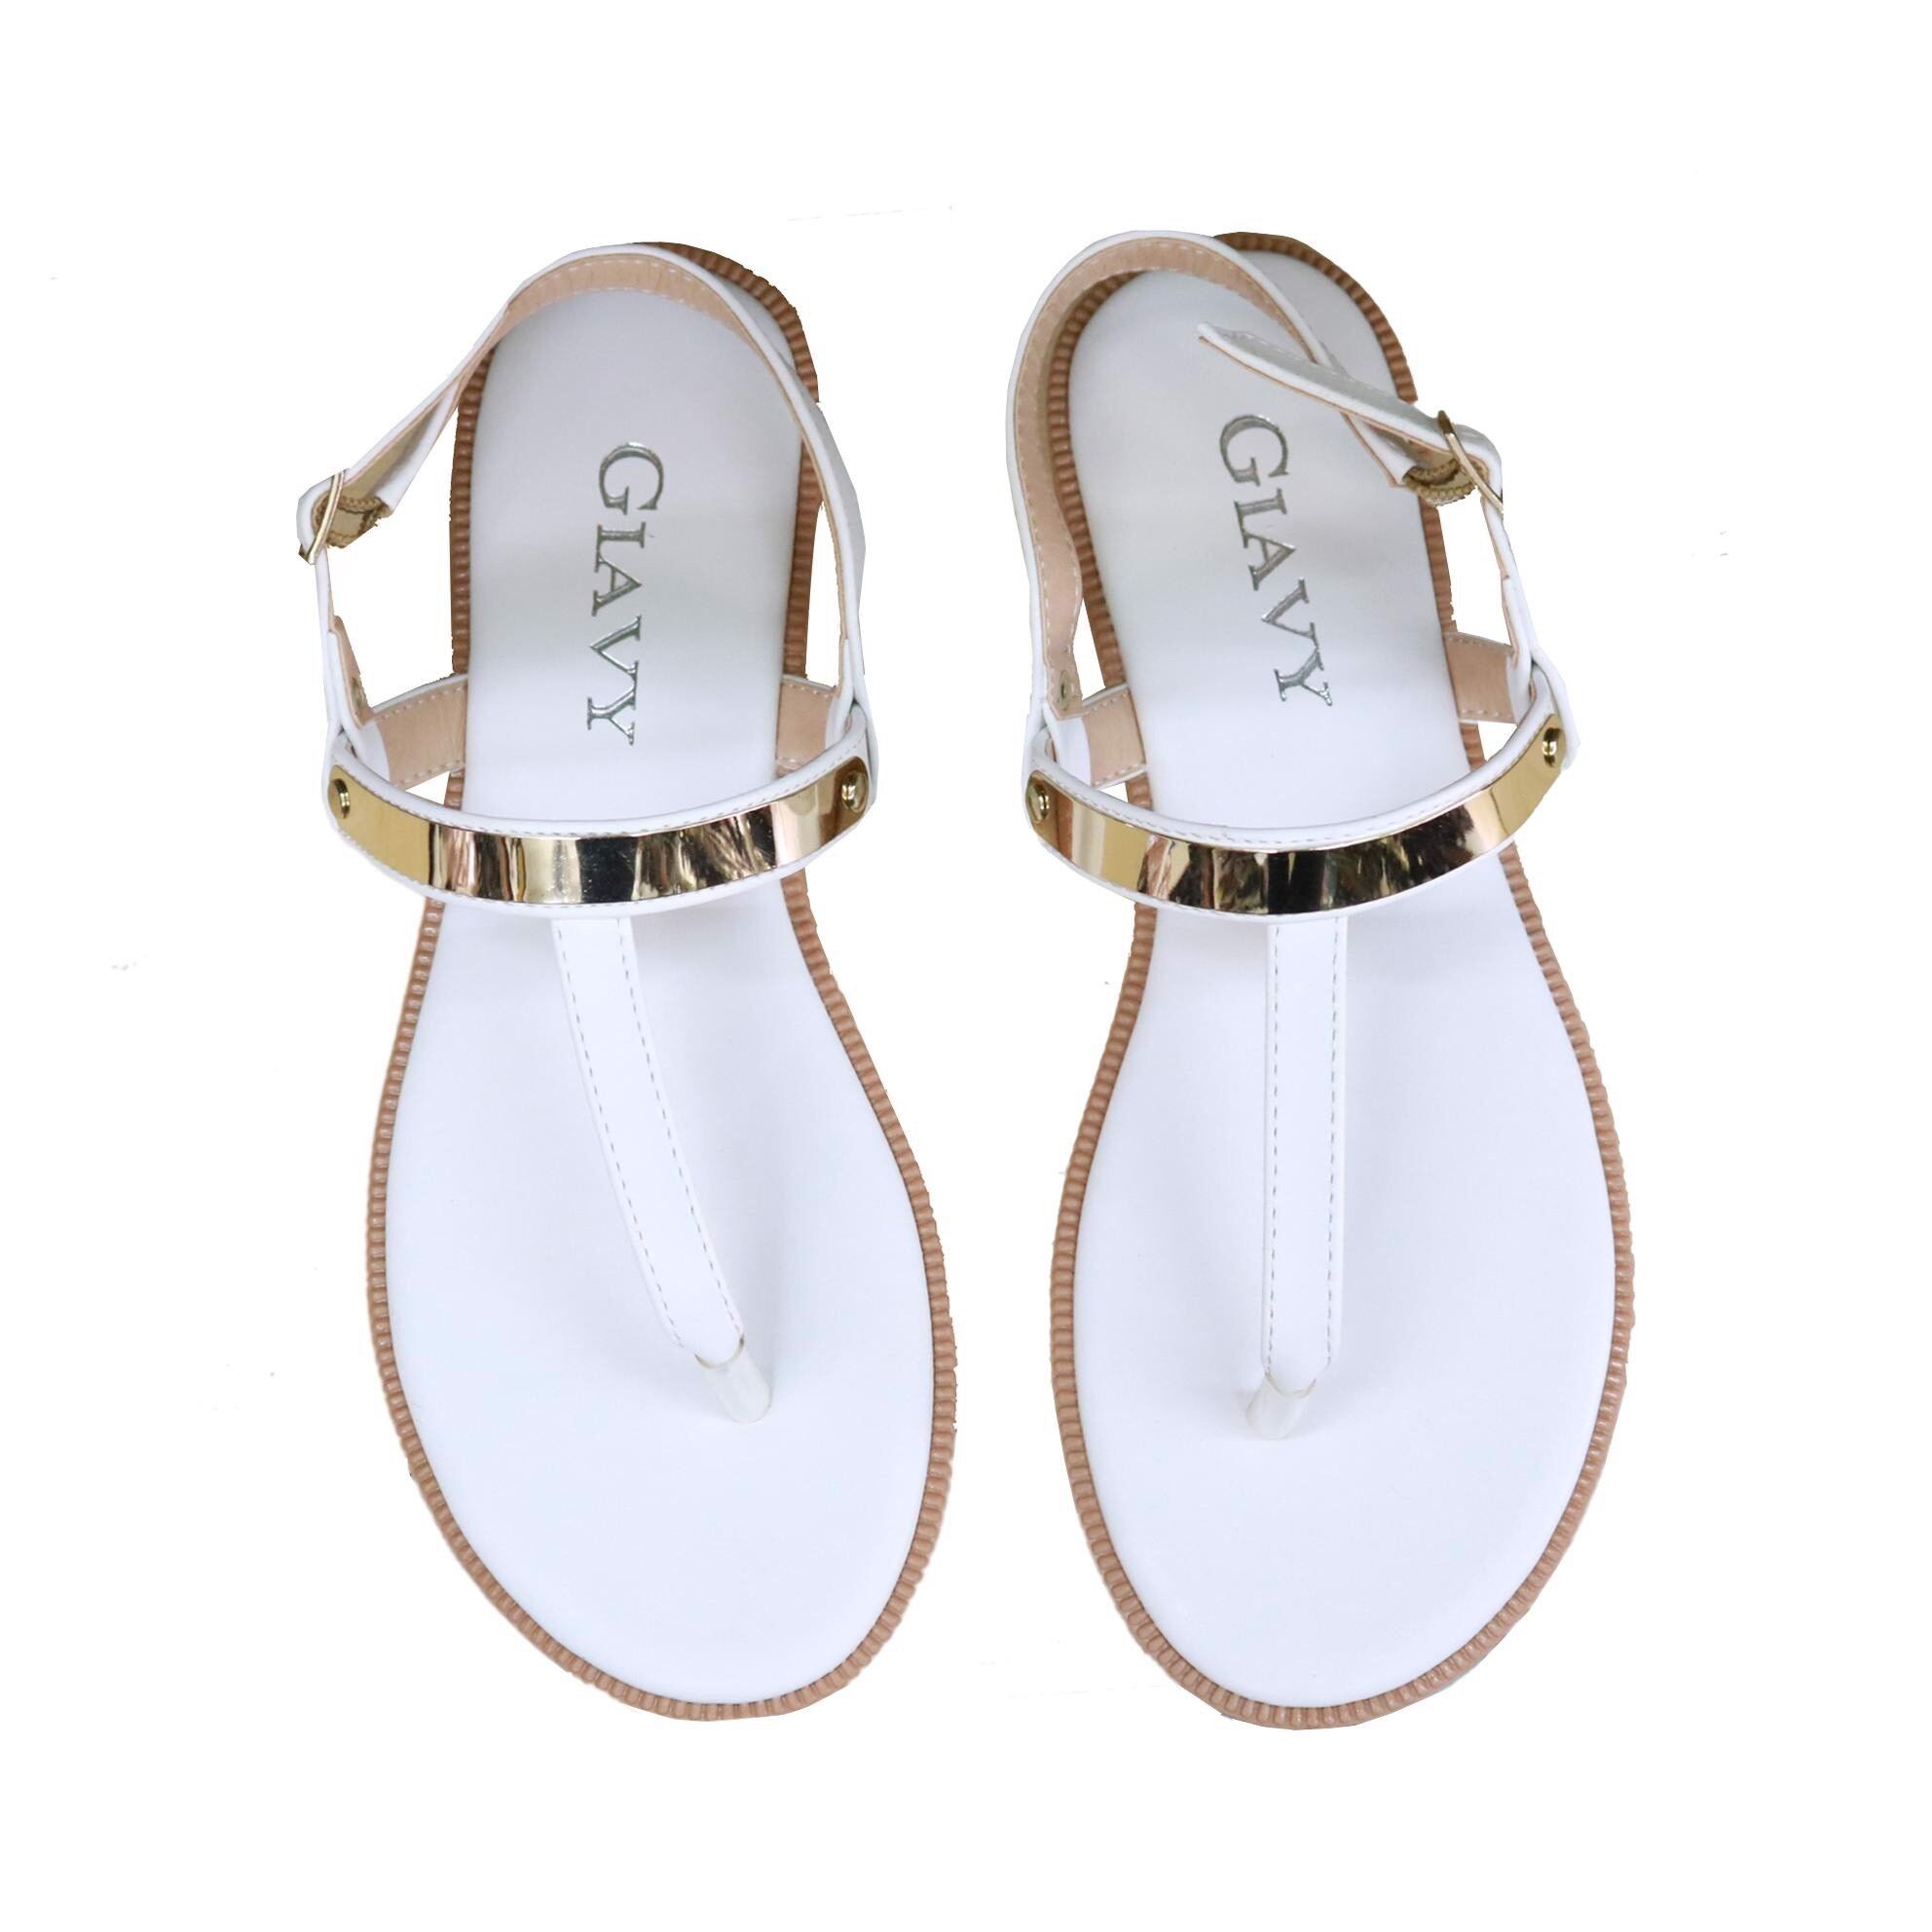 Sandal nữ GIAVY- SU S851 màu rêu và trắng quai kẹp mãnh mai